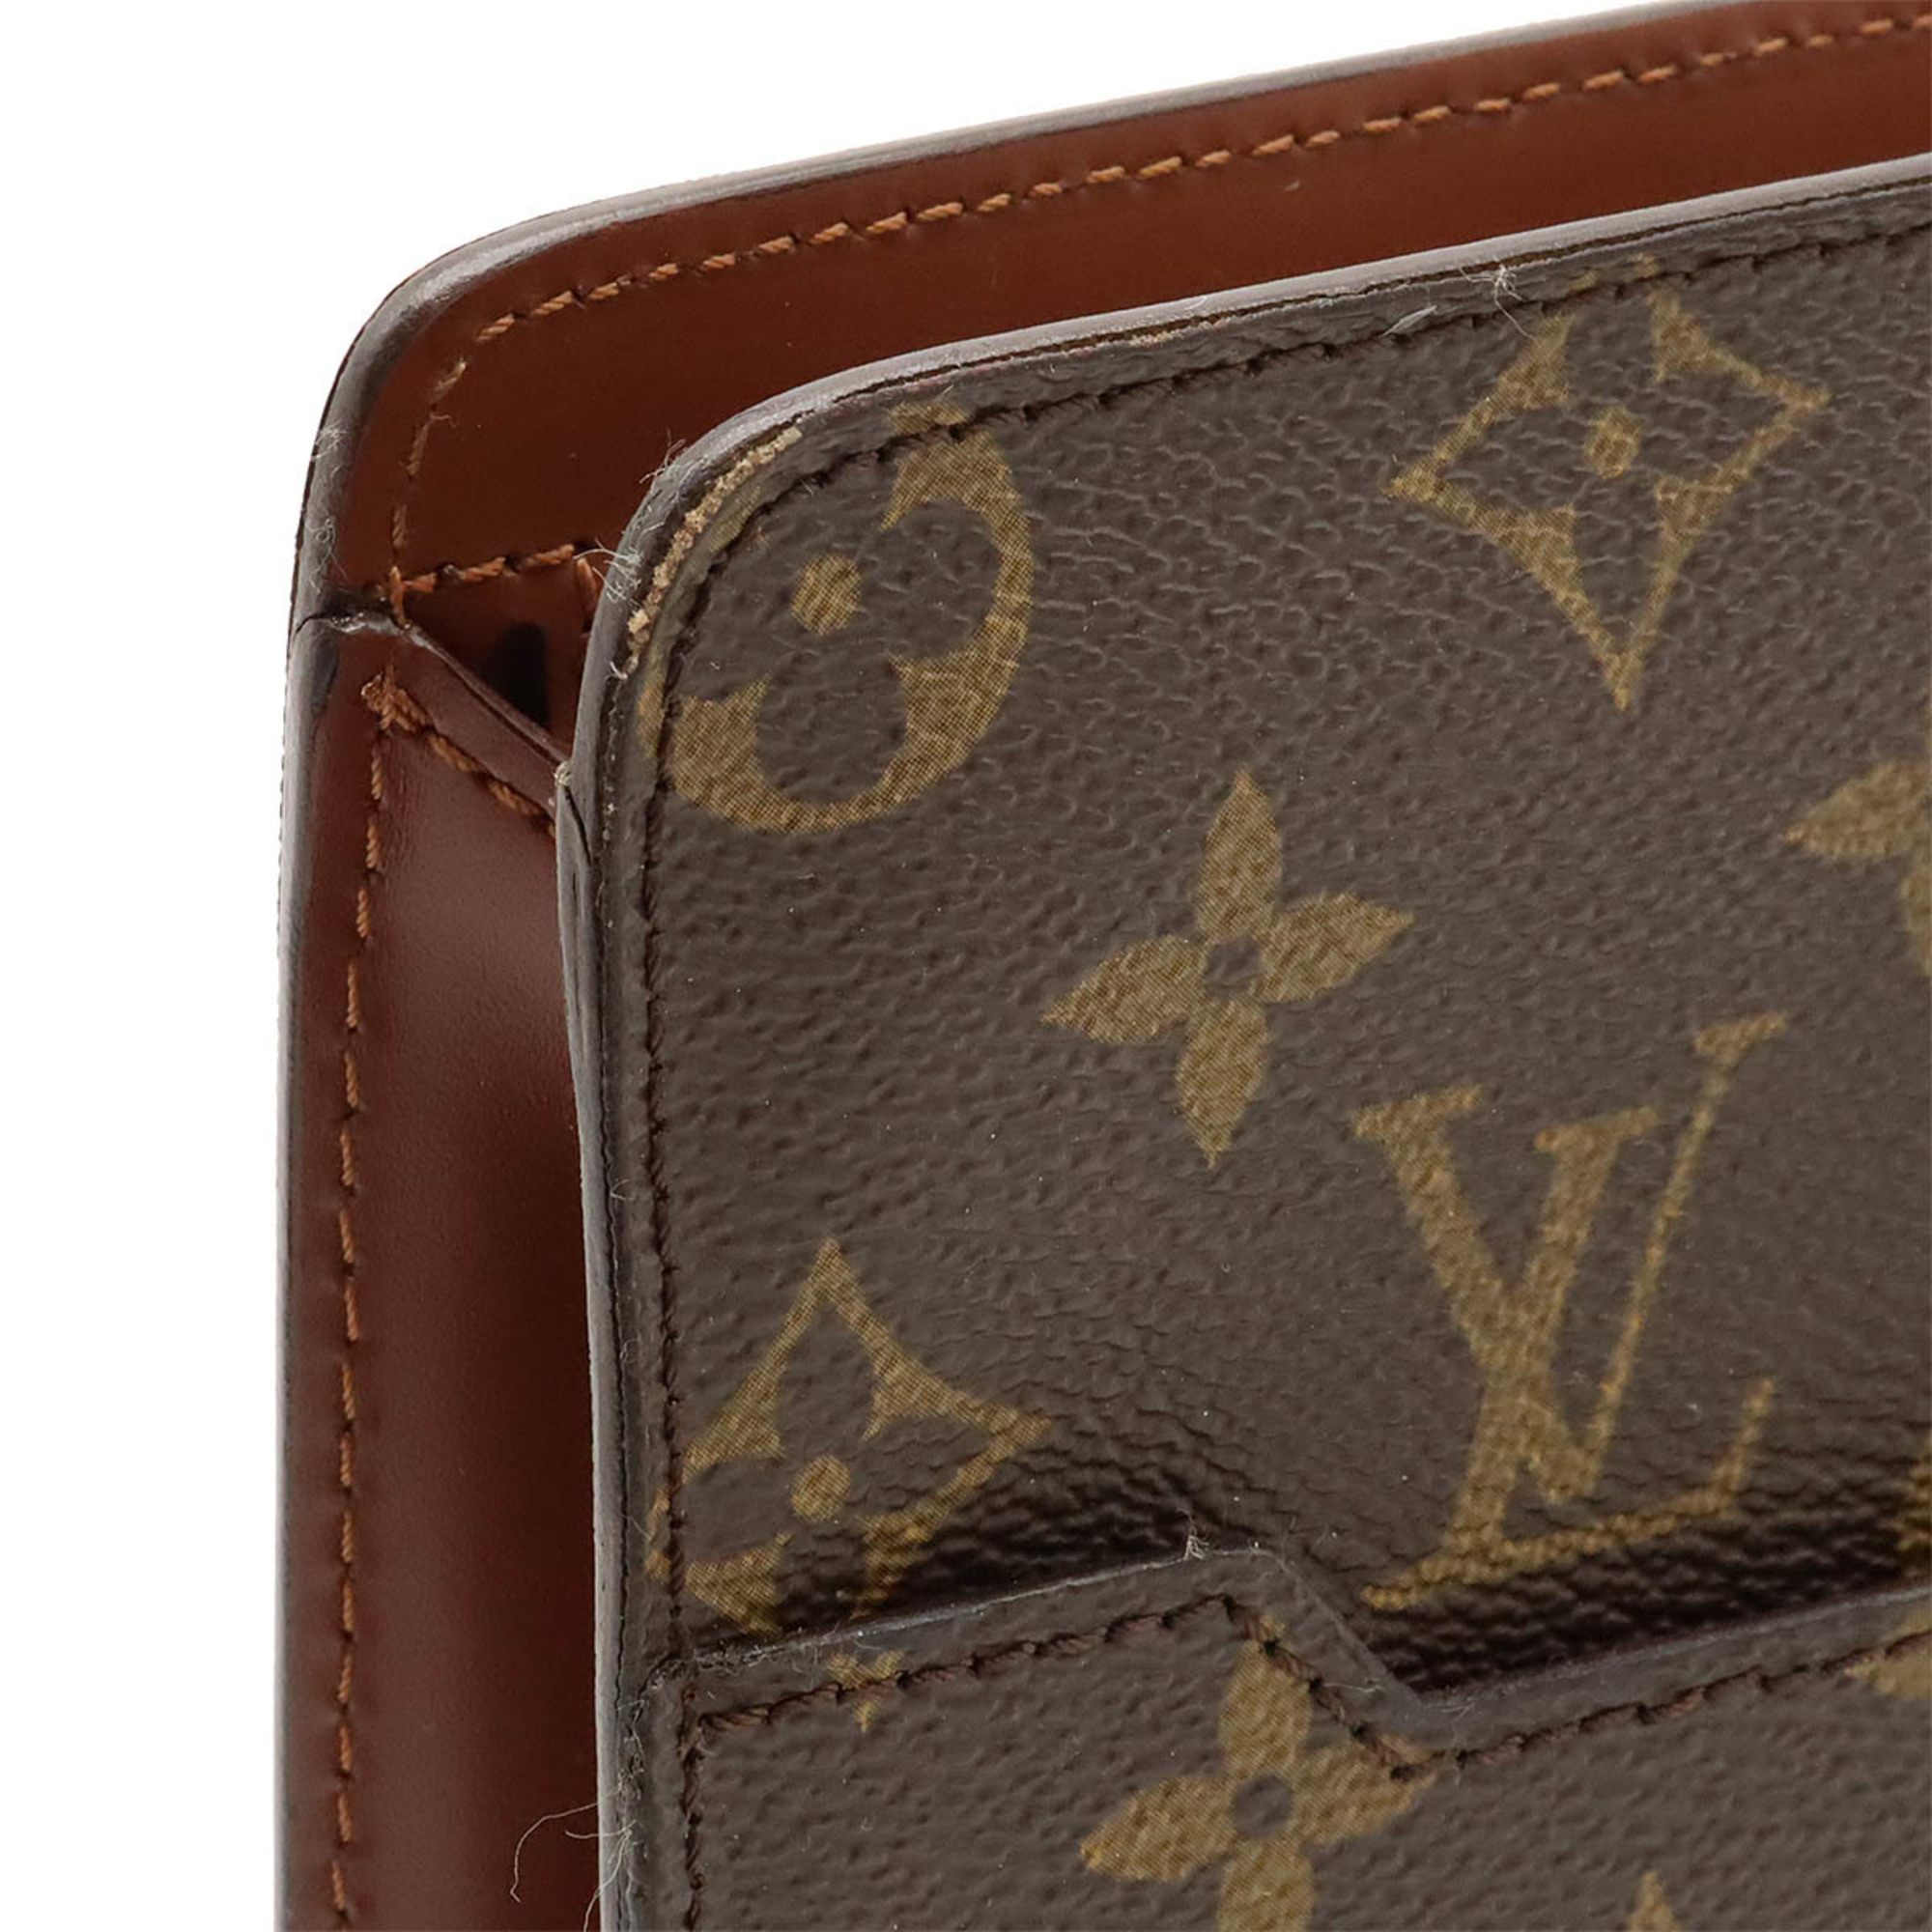 LOUIS VUITTON Louis Vuitton Monogram Pochette Homme Second Bag Clutch M51795